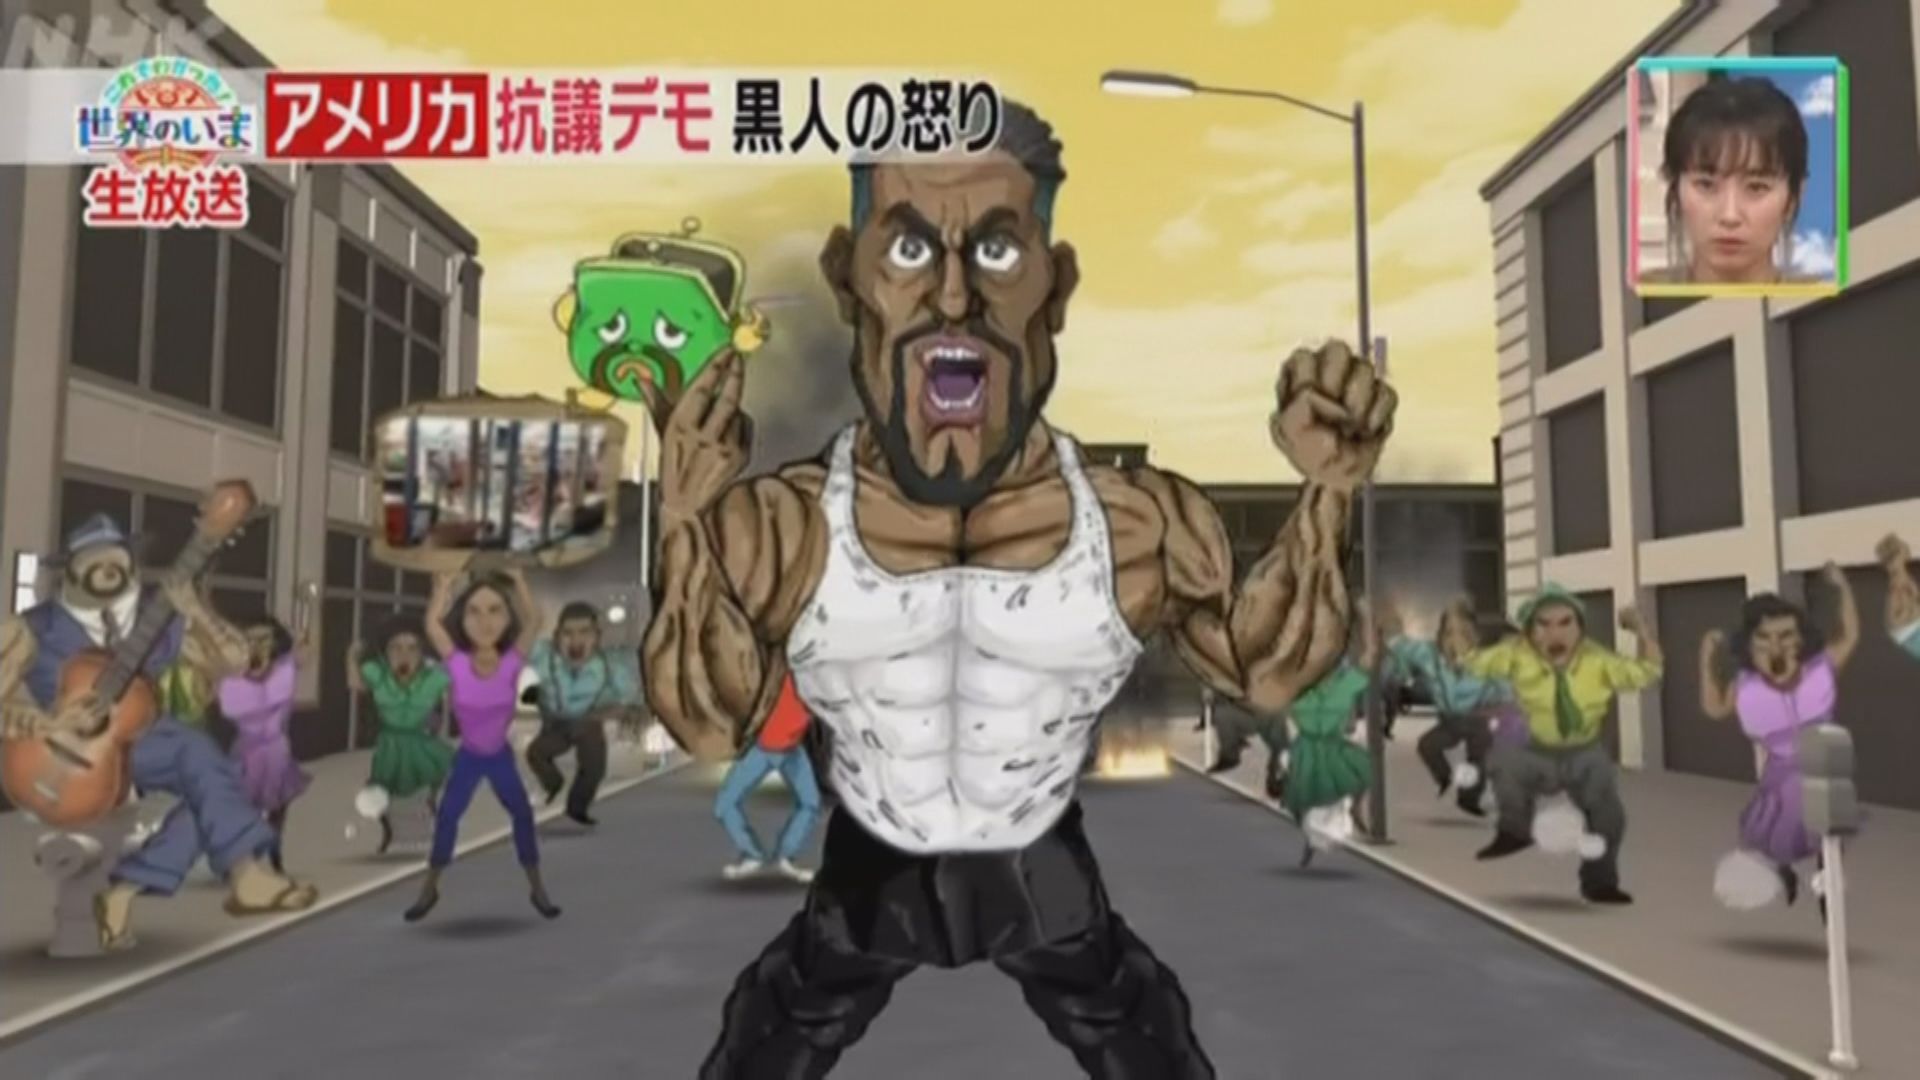 【環球薈報】NHK為動畫涉醜化黑人道歉